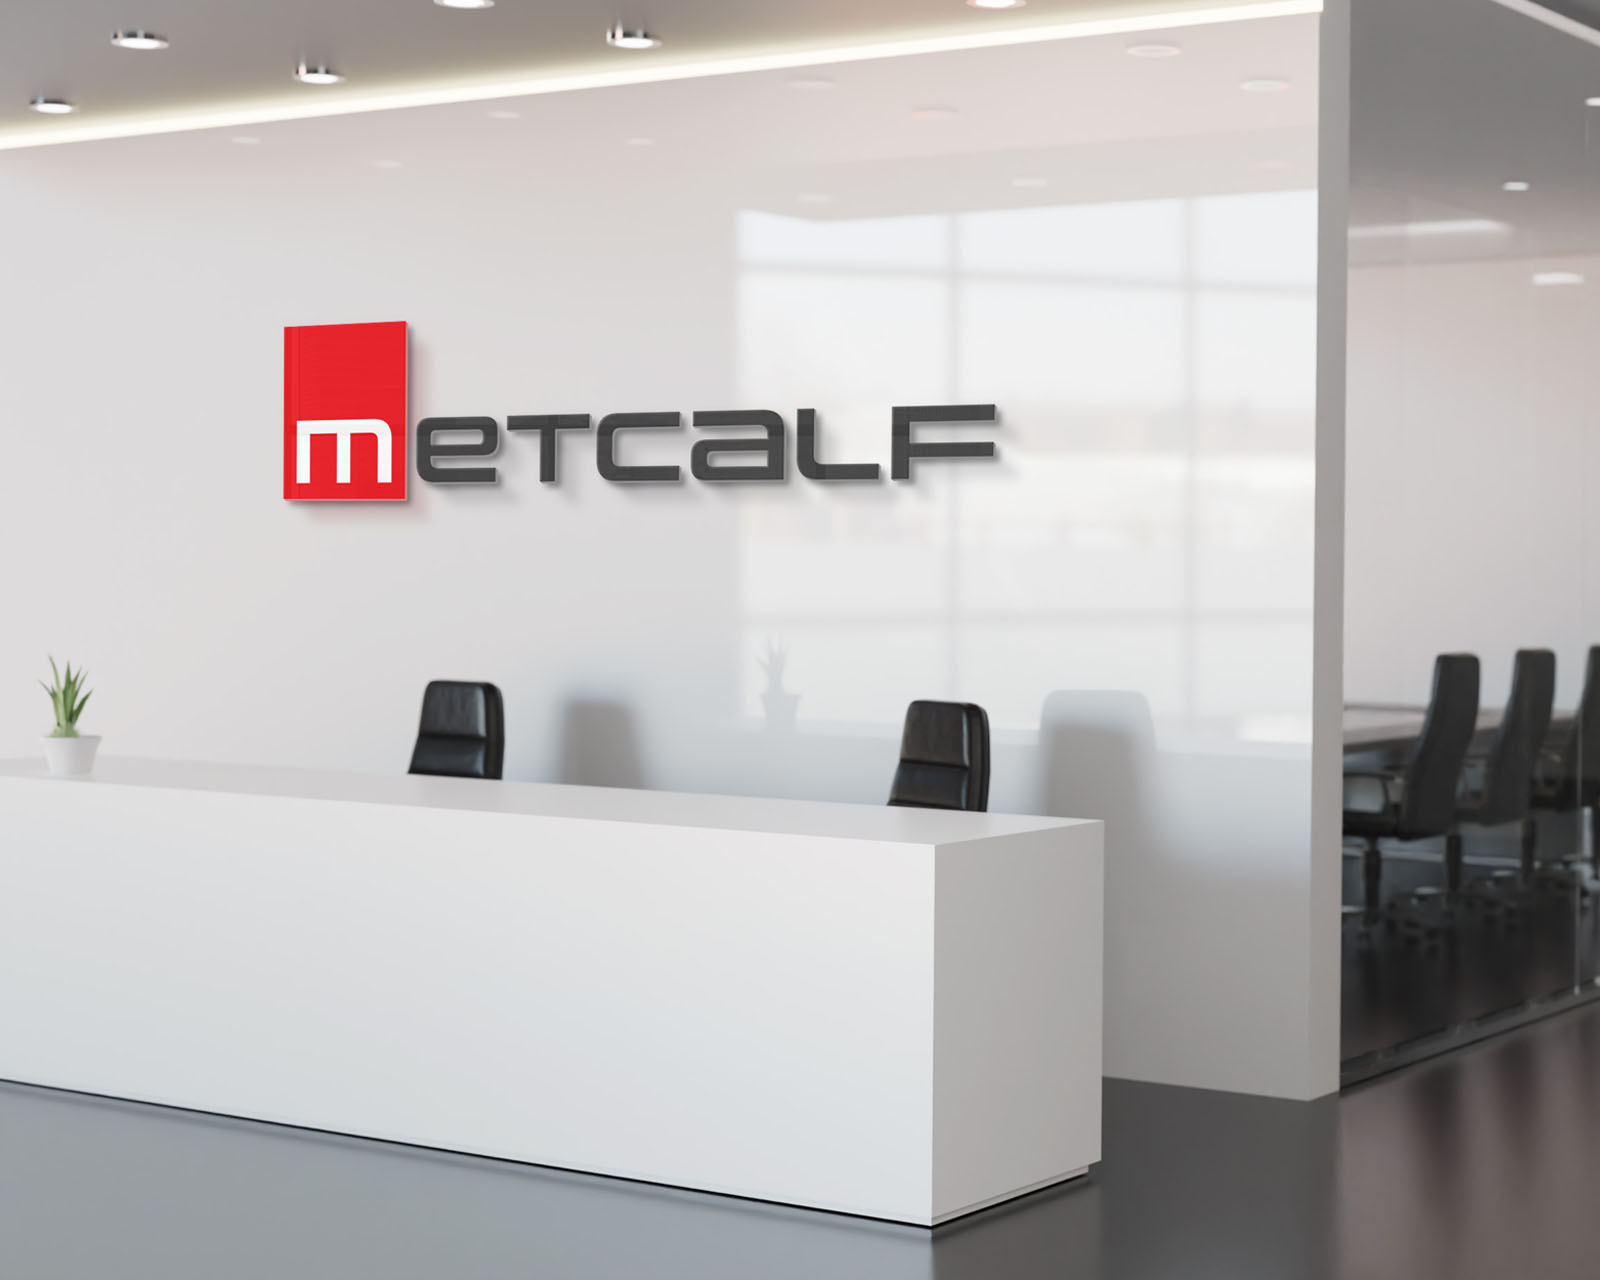 Metcalf Brand